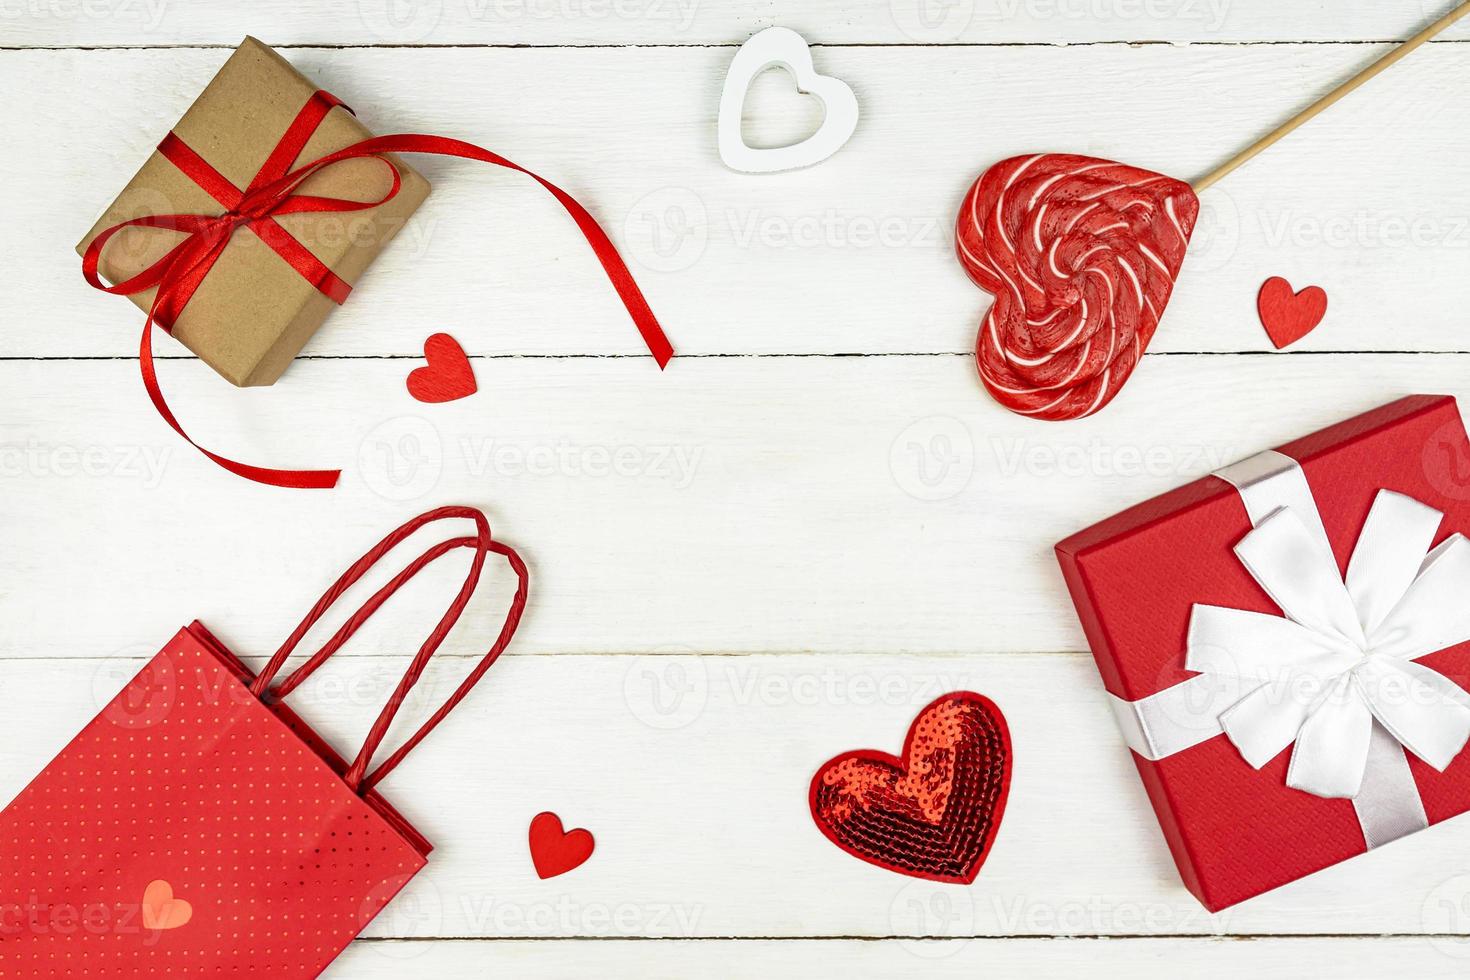 composición romántica creativa del día de san valentín con corazones rojos, cinta de raso, piruleta, caja de regalo y bolsa de papel sobre fondo blanco. maqueta con espacio de copia para blogs y redes sociales. foto